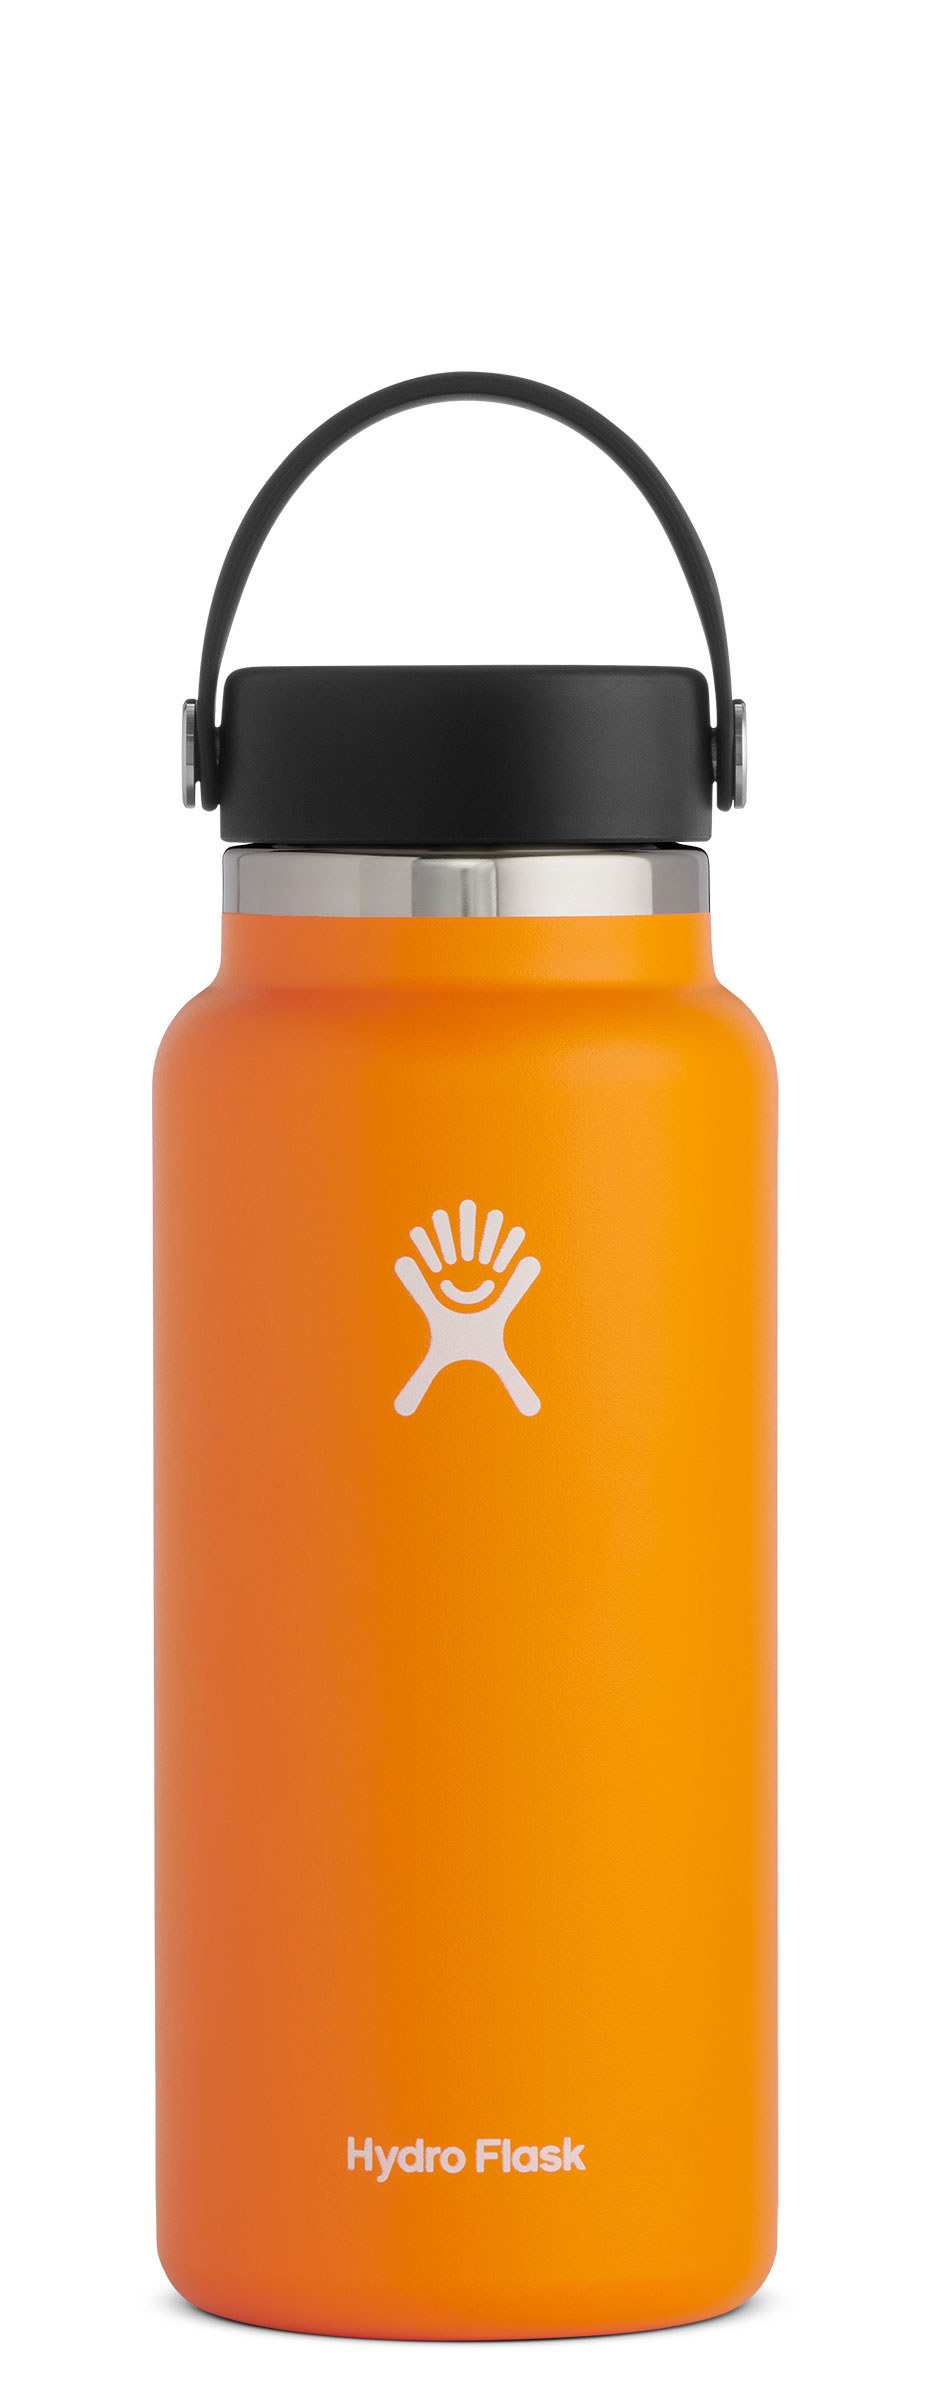 32-oz orange Hydro Flask water bottle